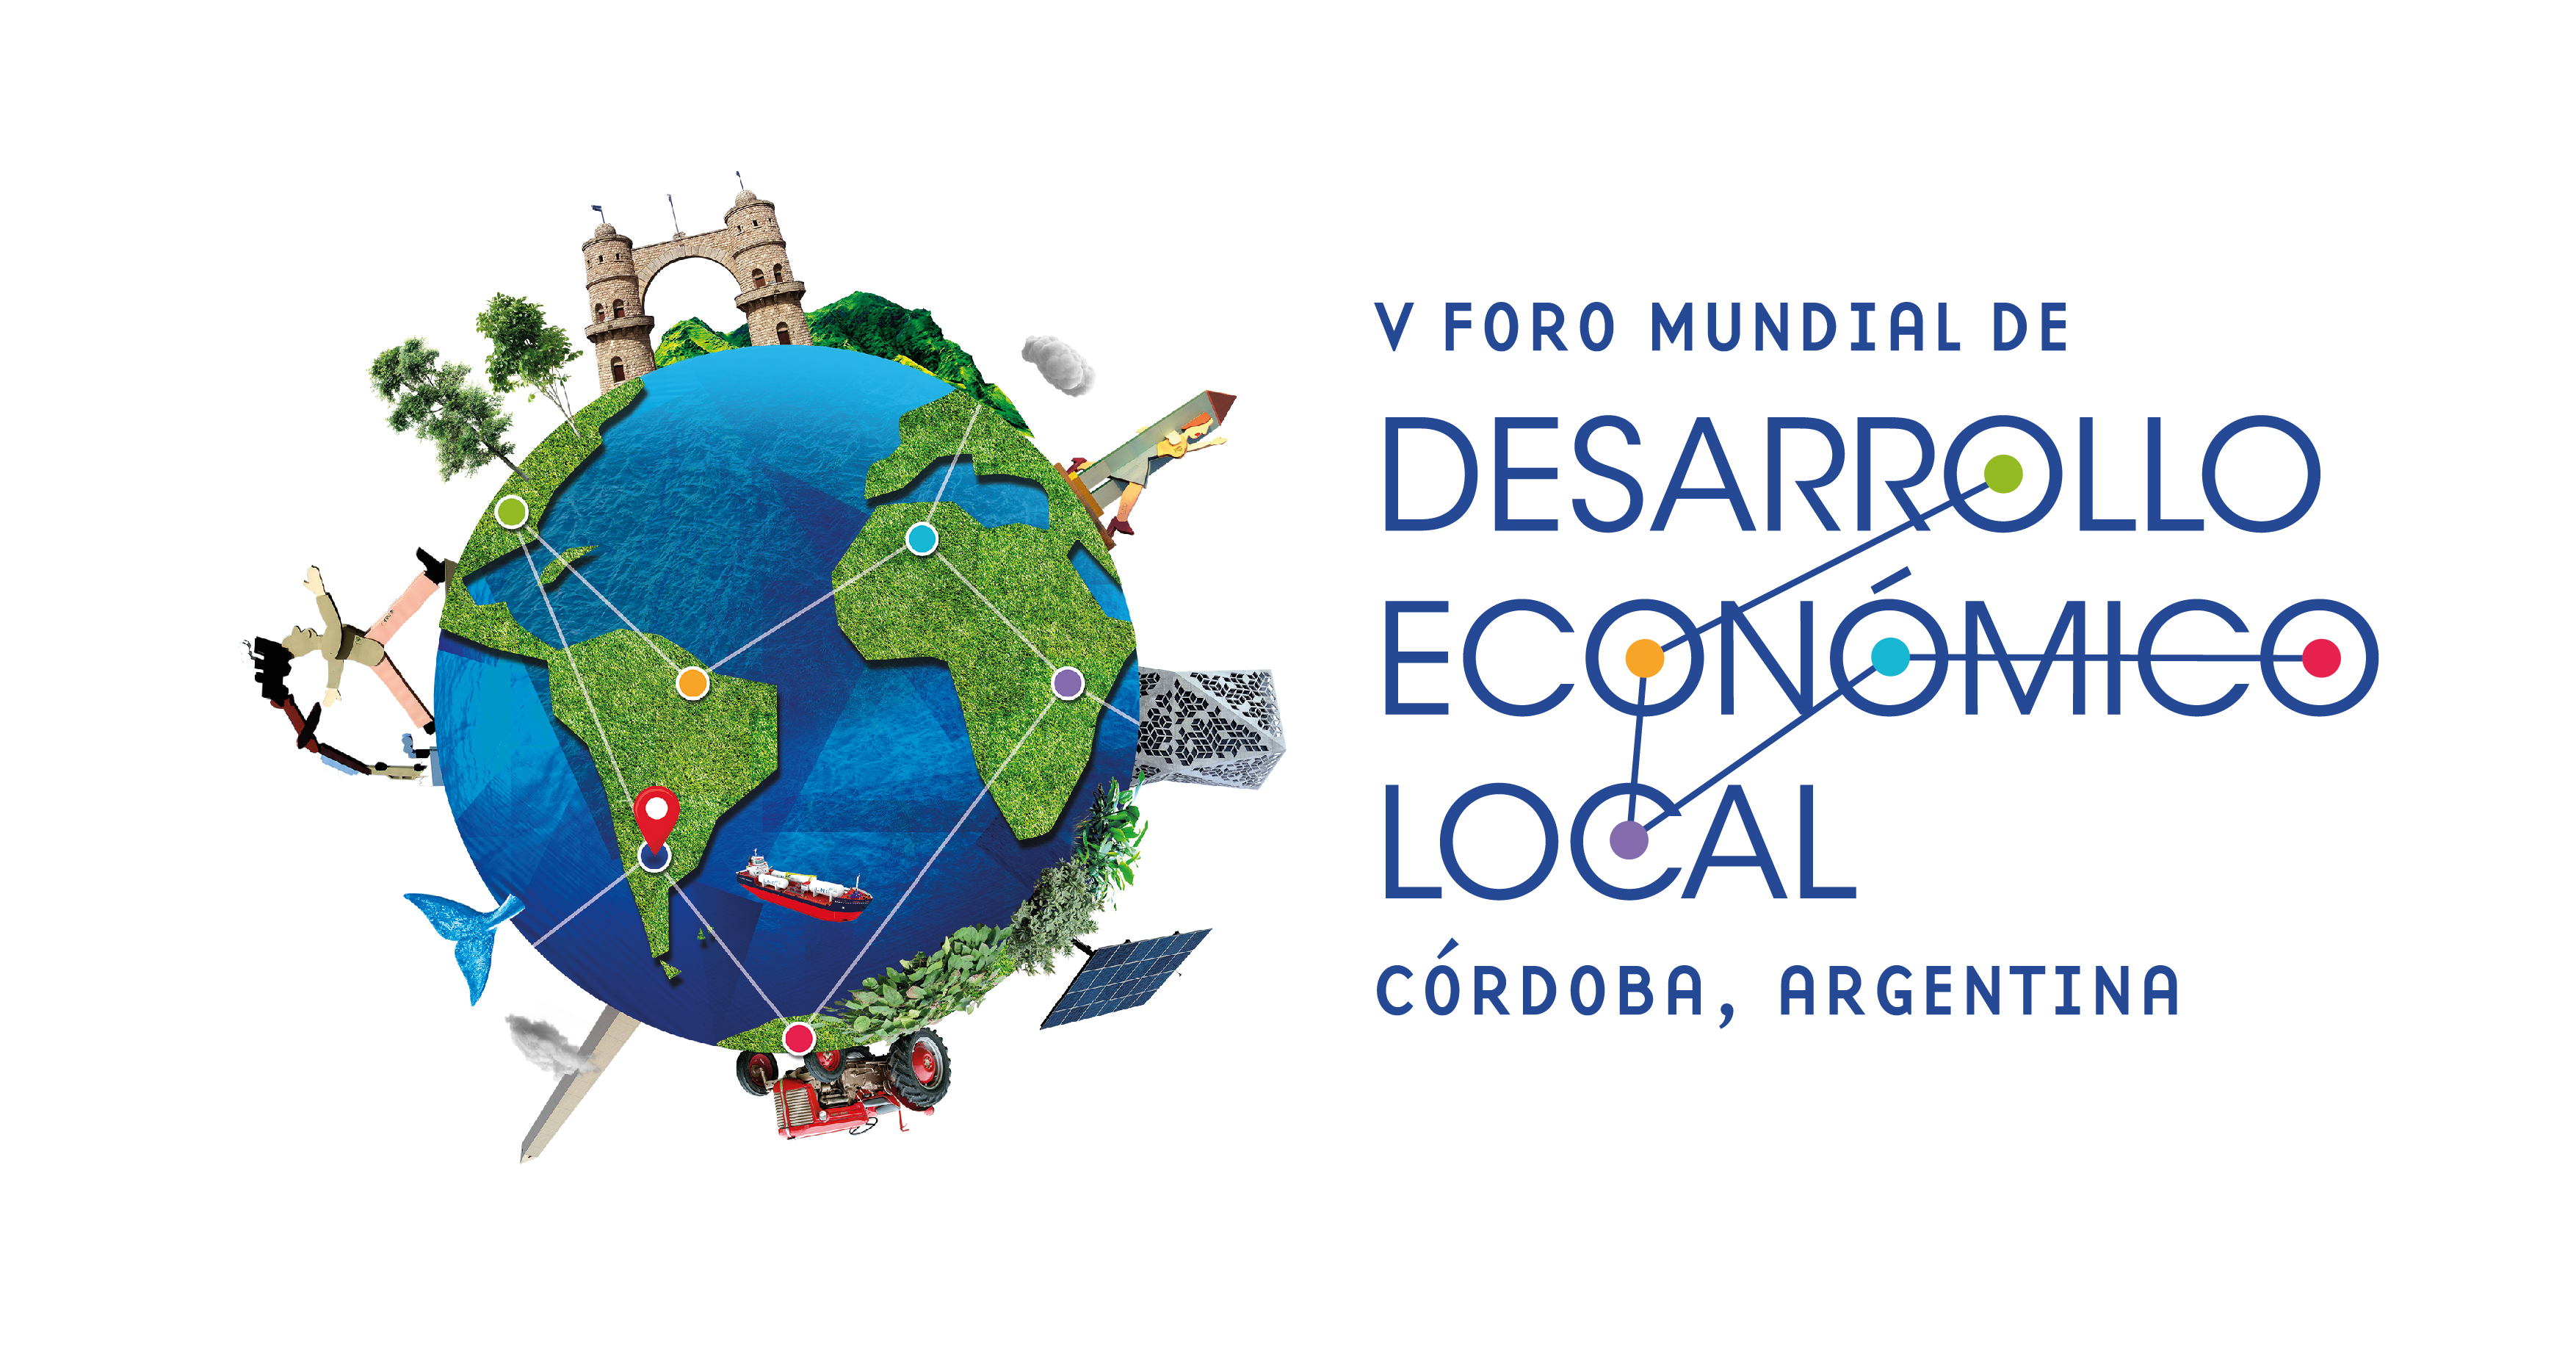 El V Foro Mundial de Desarrollo Económico Local llega a Córdoba